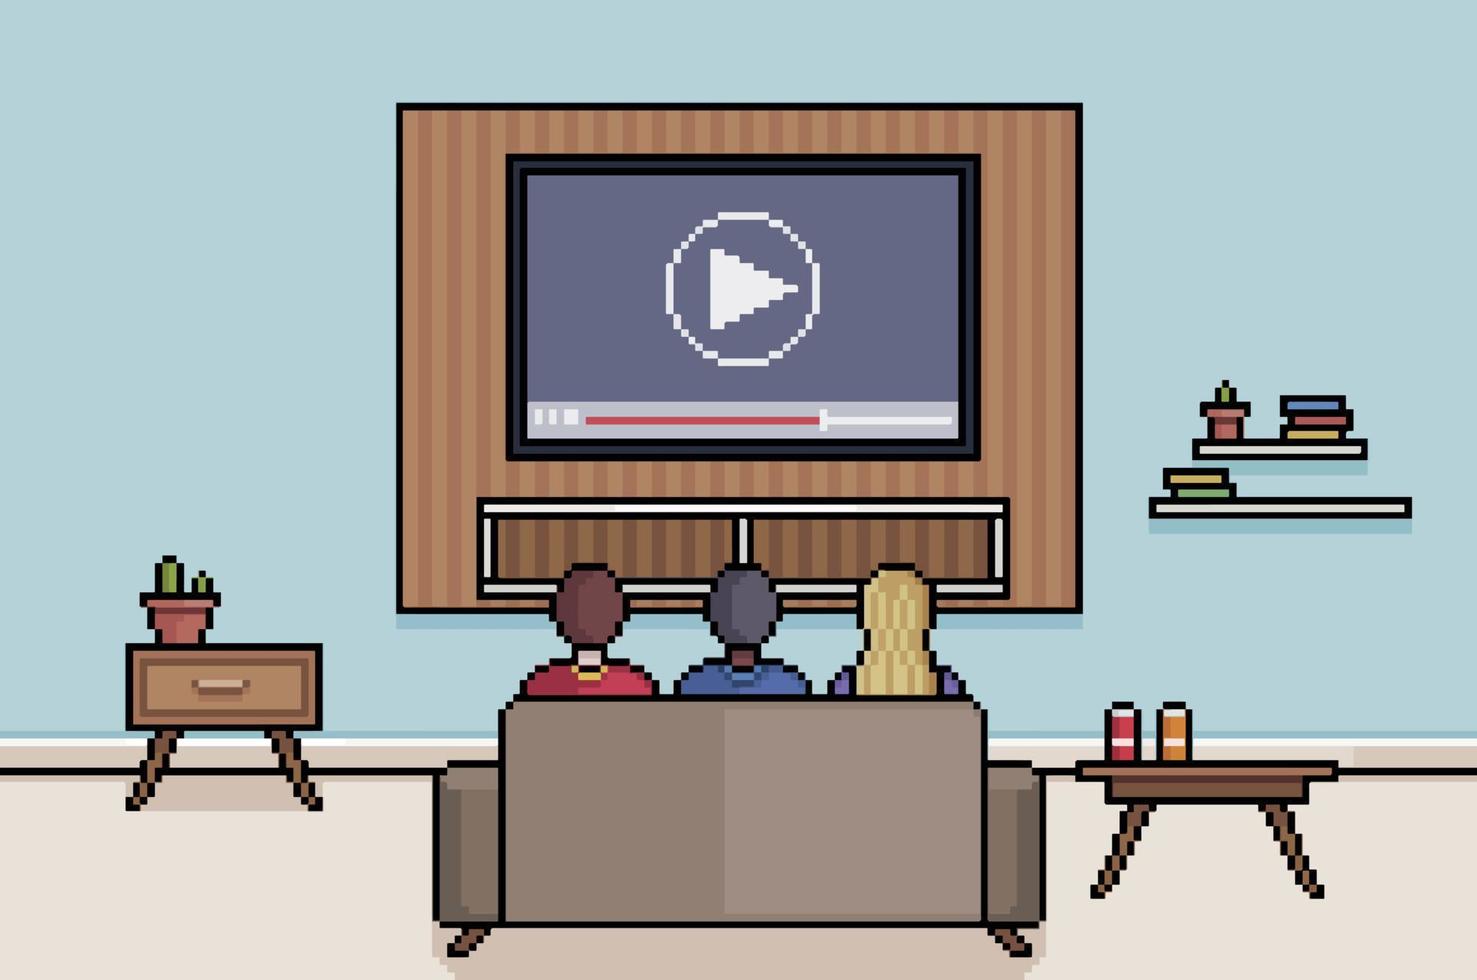 sala de estar de arte de píxeles con gente viendo televisión, películas, series y aplicaciones de transmisión vector de fondo de juego de 8 bits